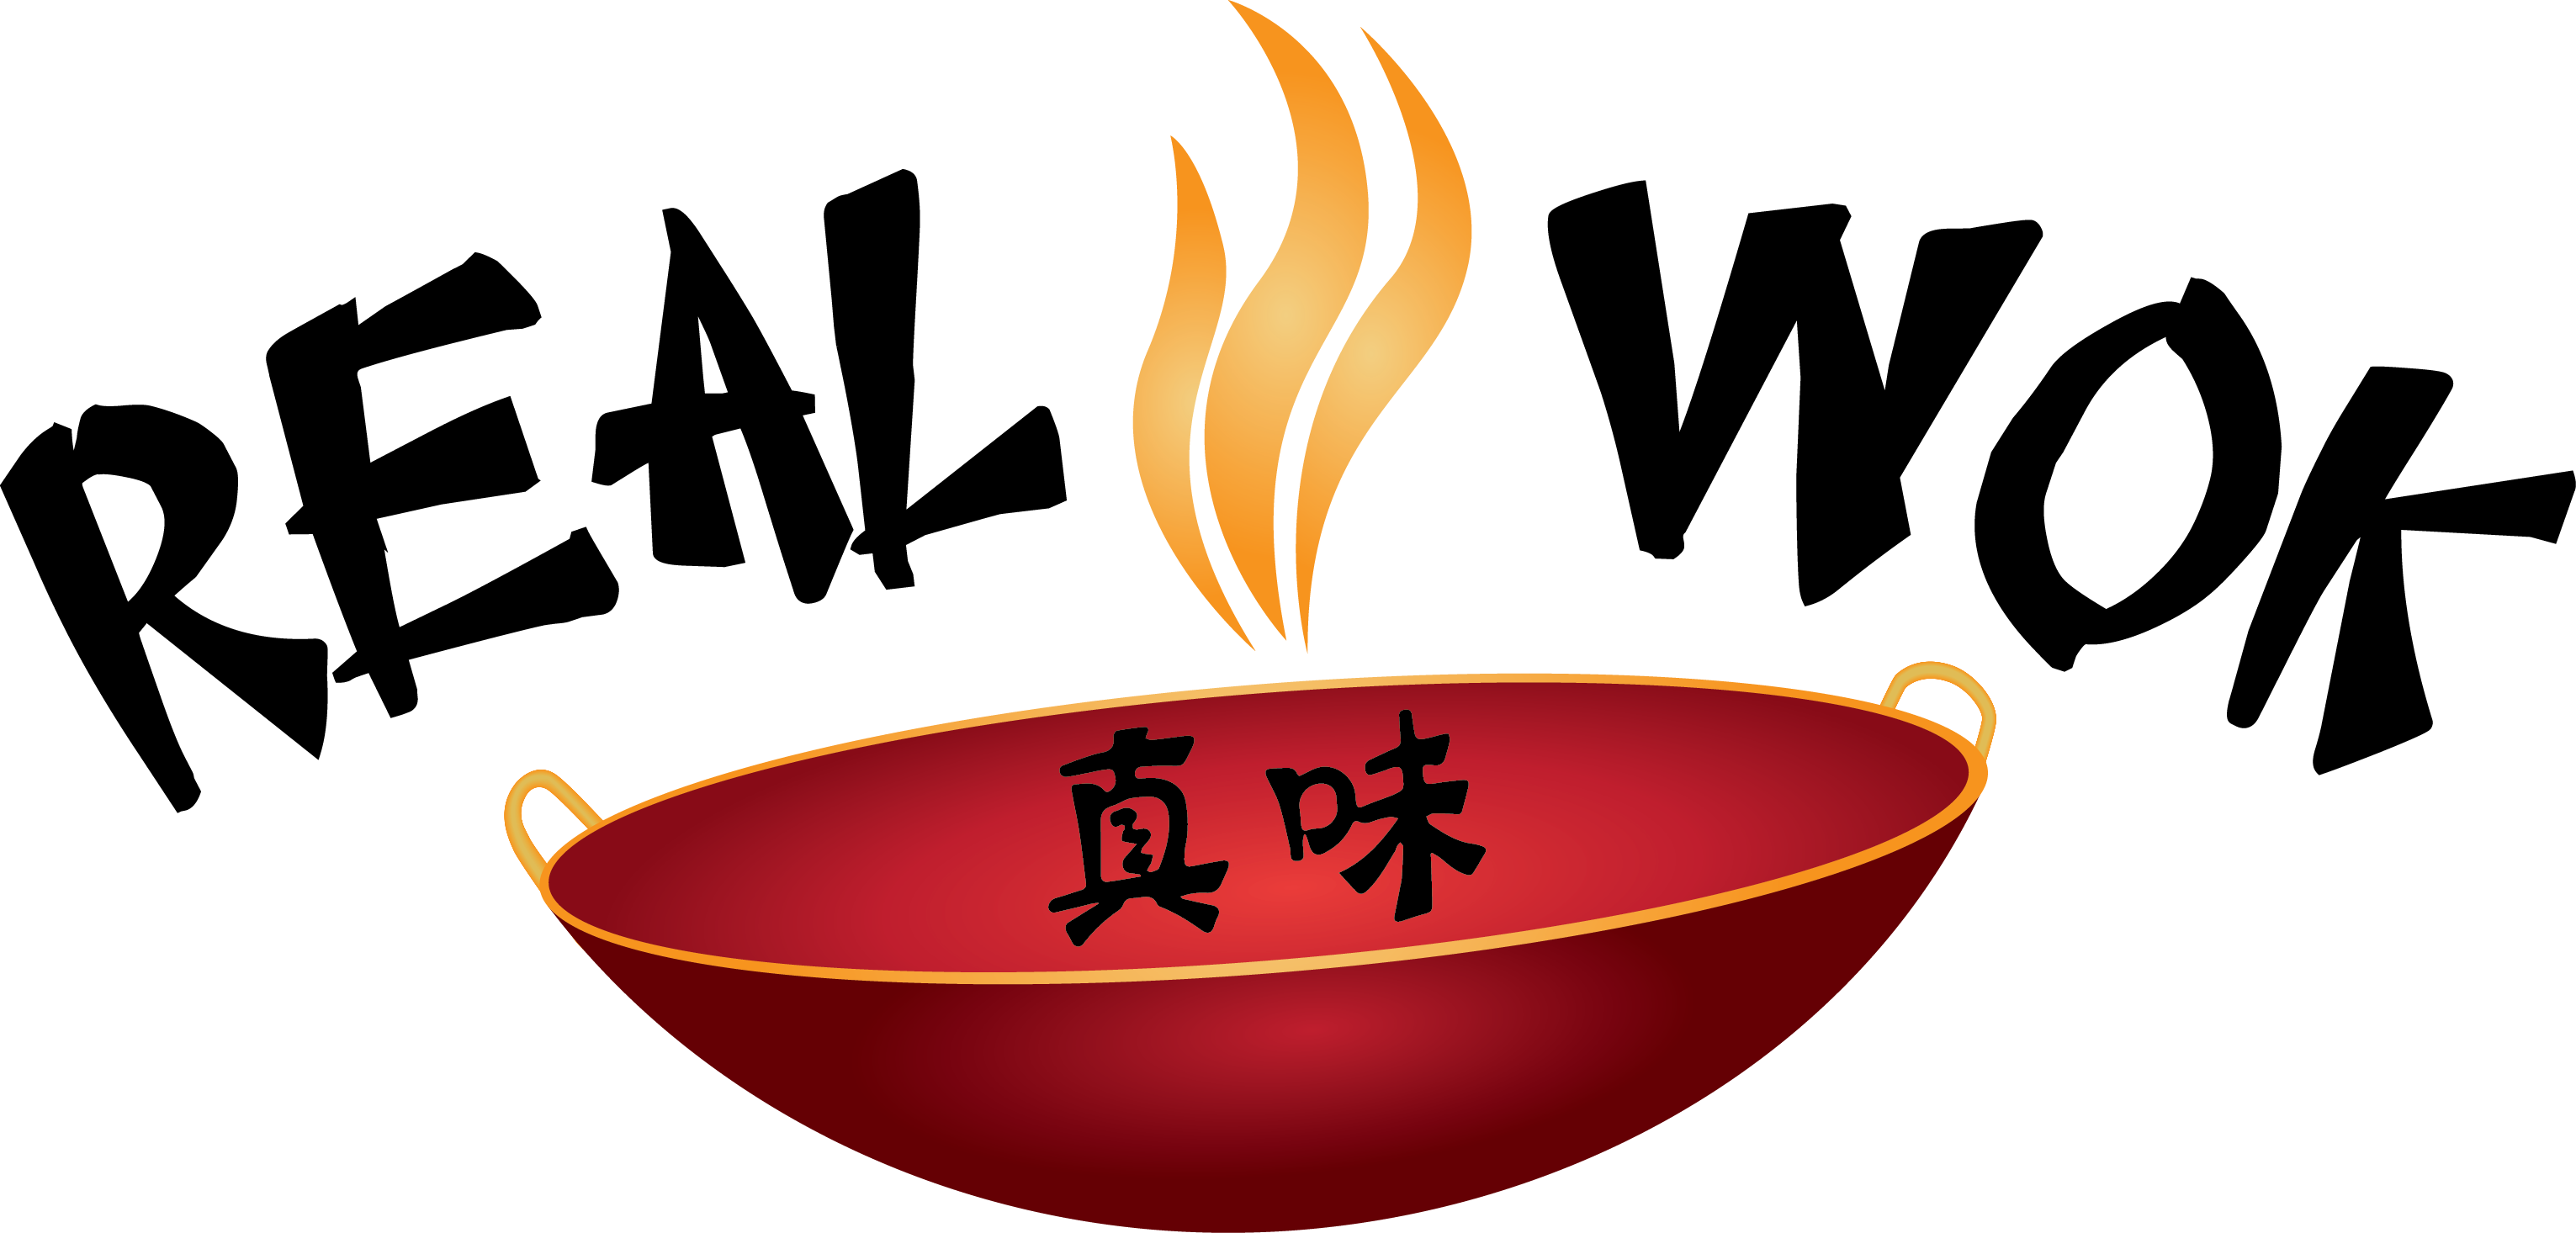 Логотип Wok. Реклама Wok. Китайская кухня вок. Логотип китайского ресторана. Вок рисунки